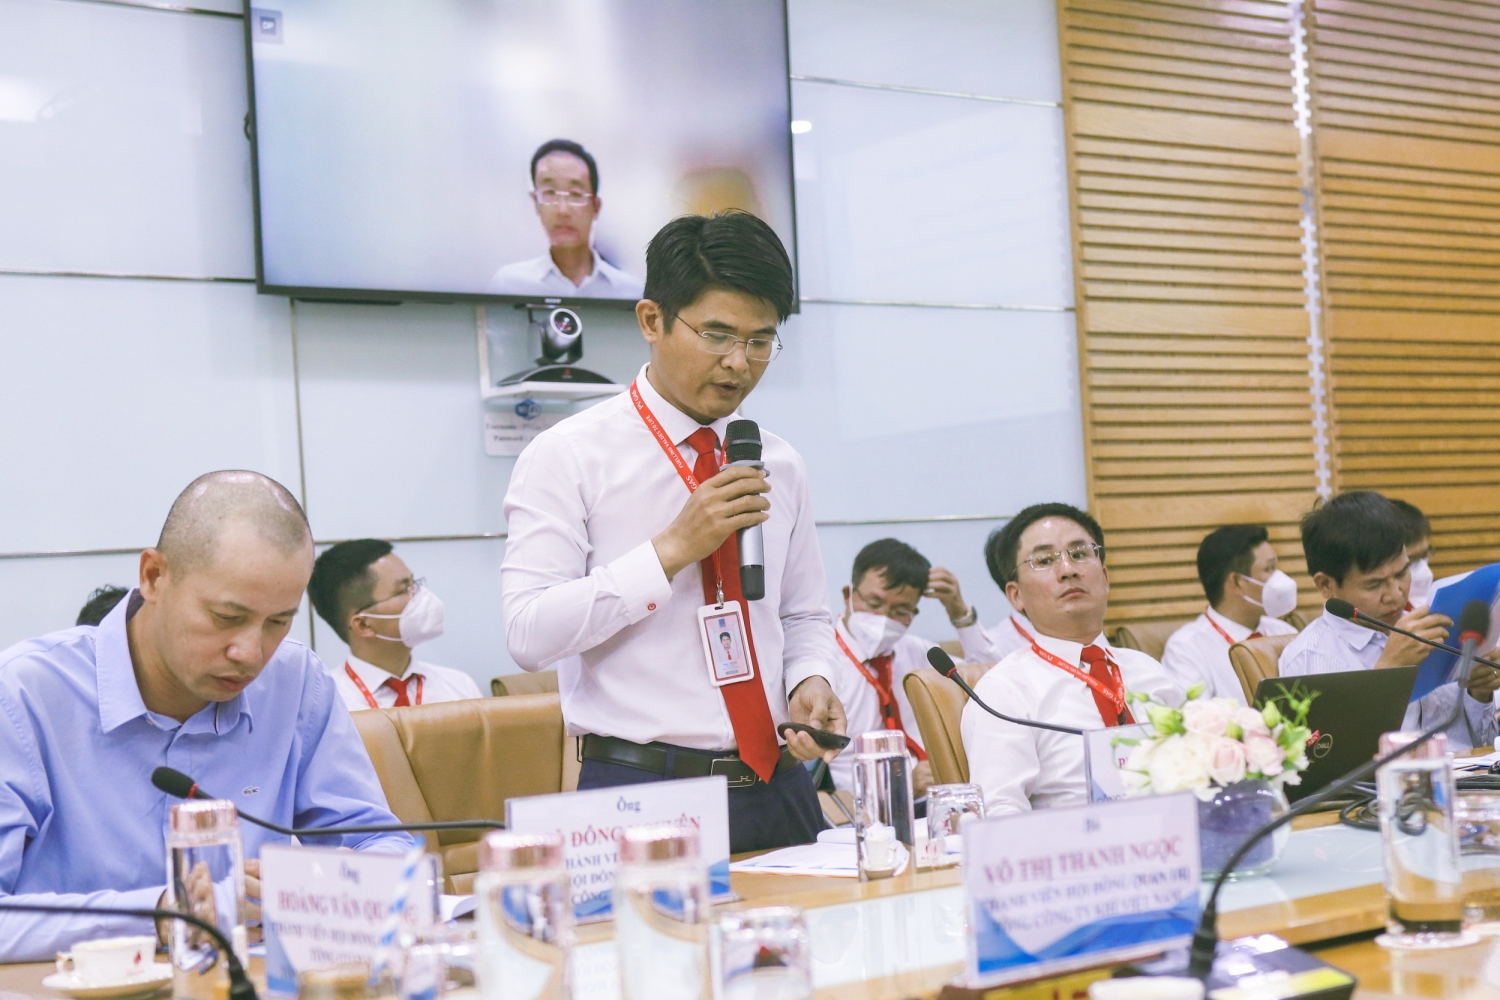 Phó Giám đốc KVT Phan Tấn Hậu báo cáo tại buổi làm việc